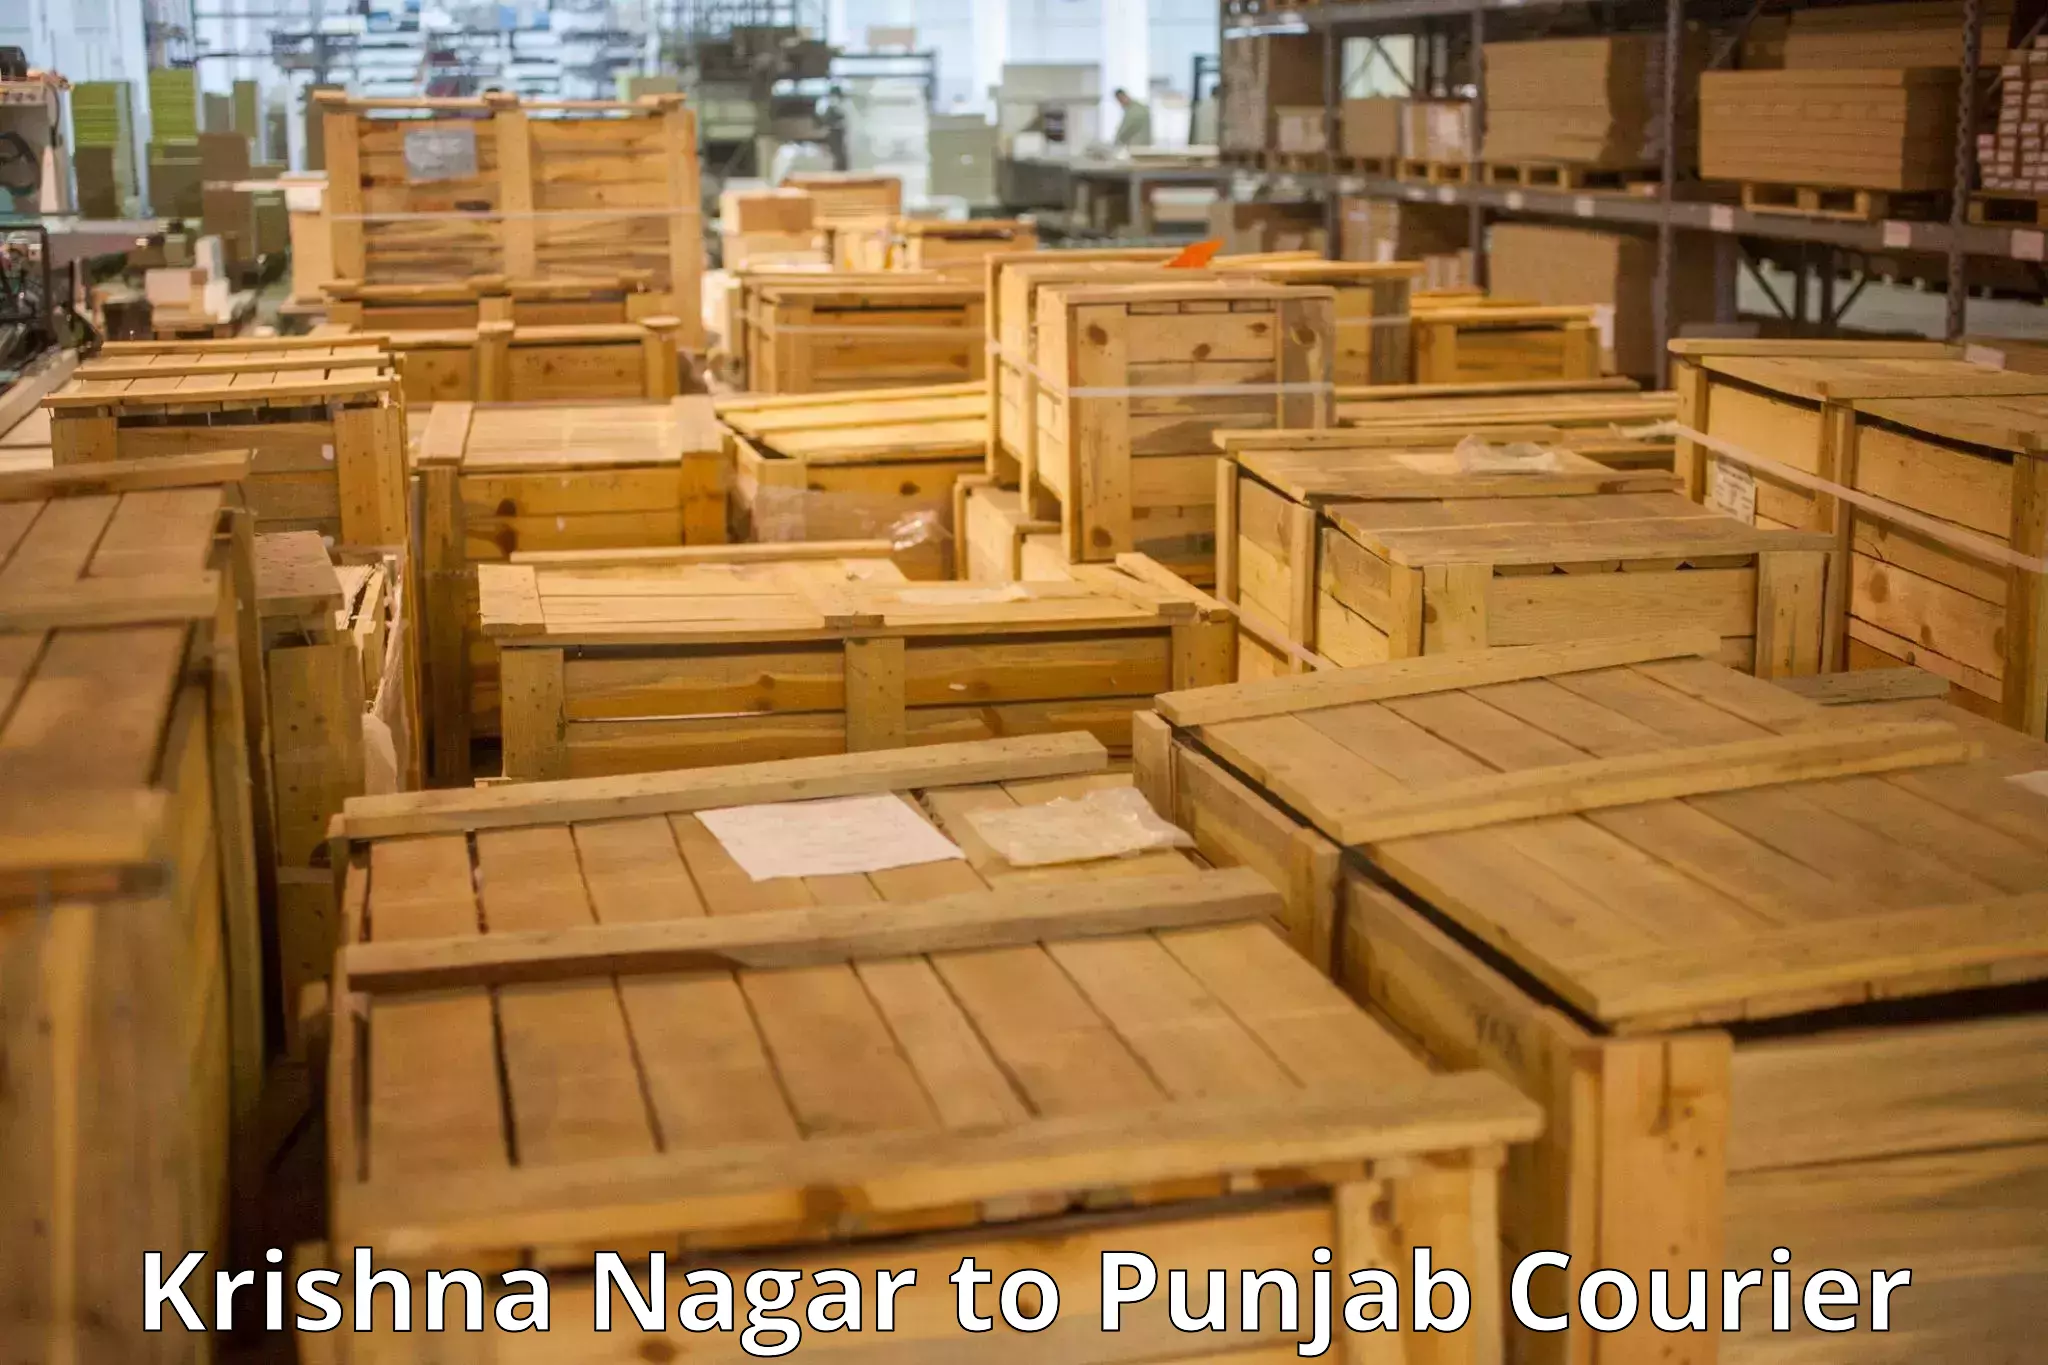 Professional baggage transport Krishna Nagar to Punjab